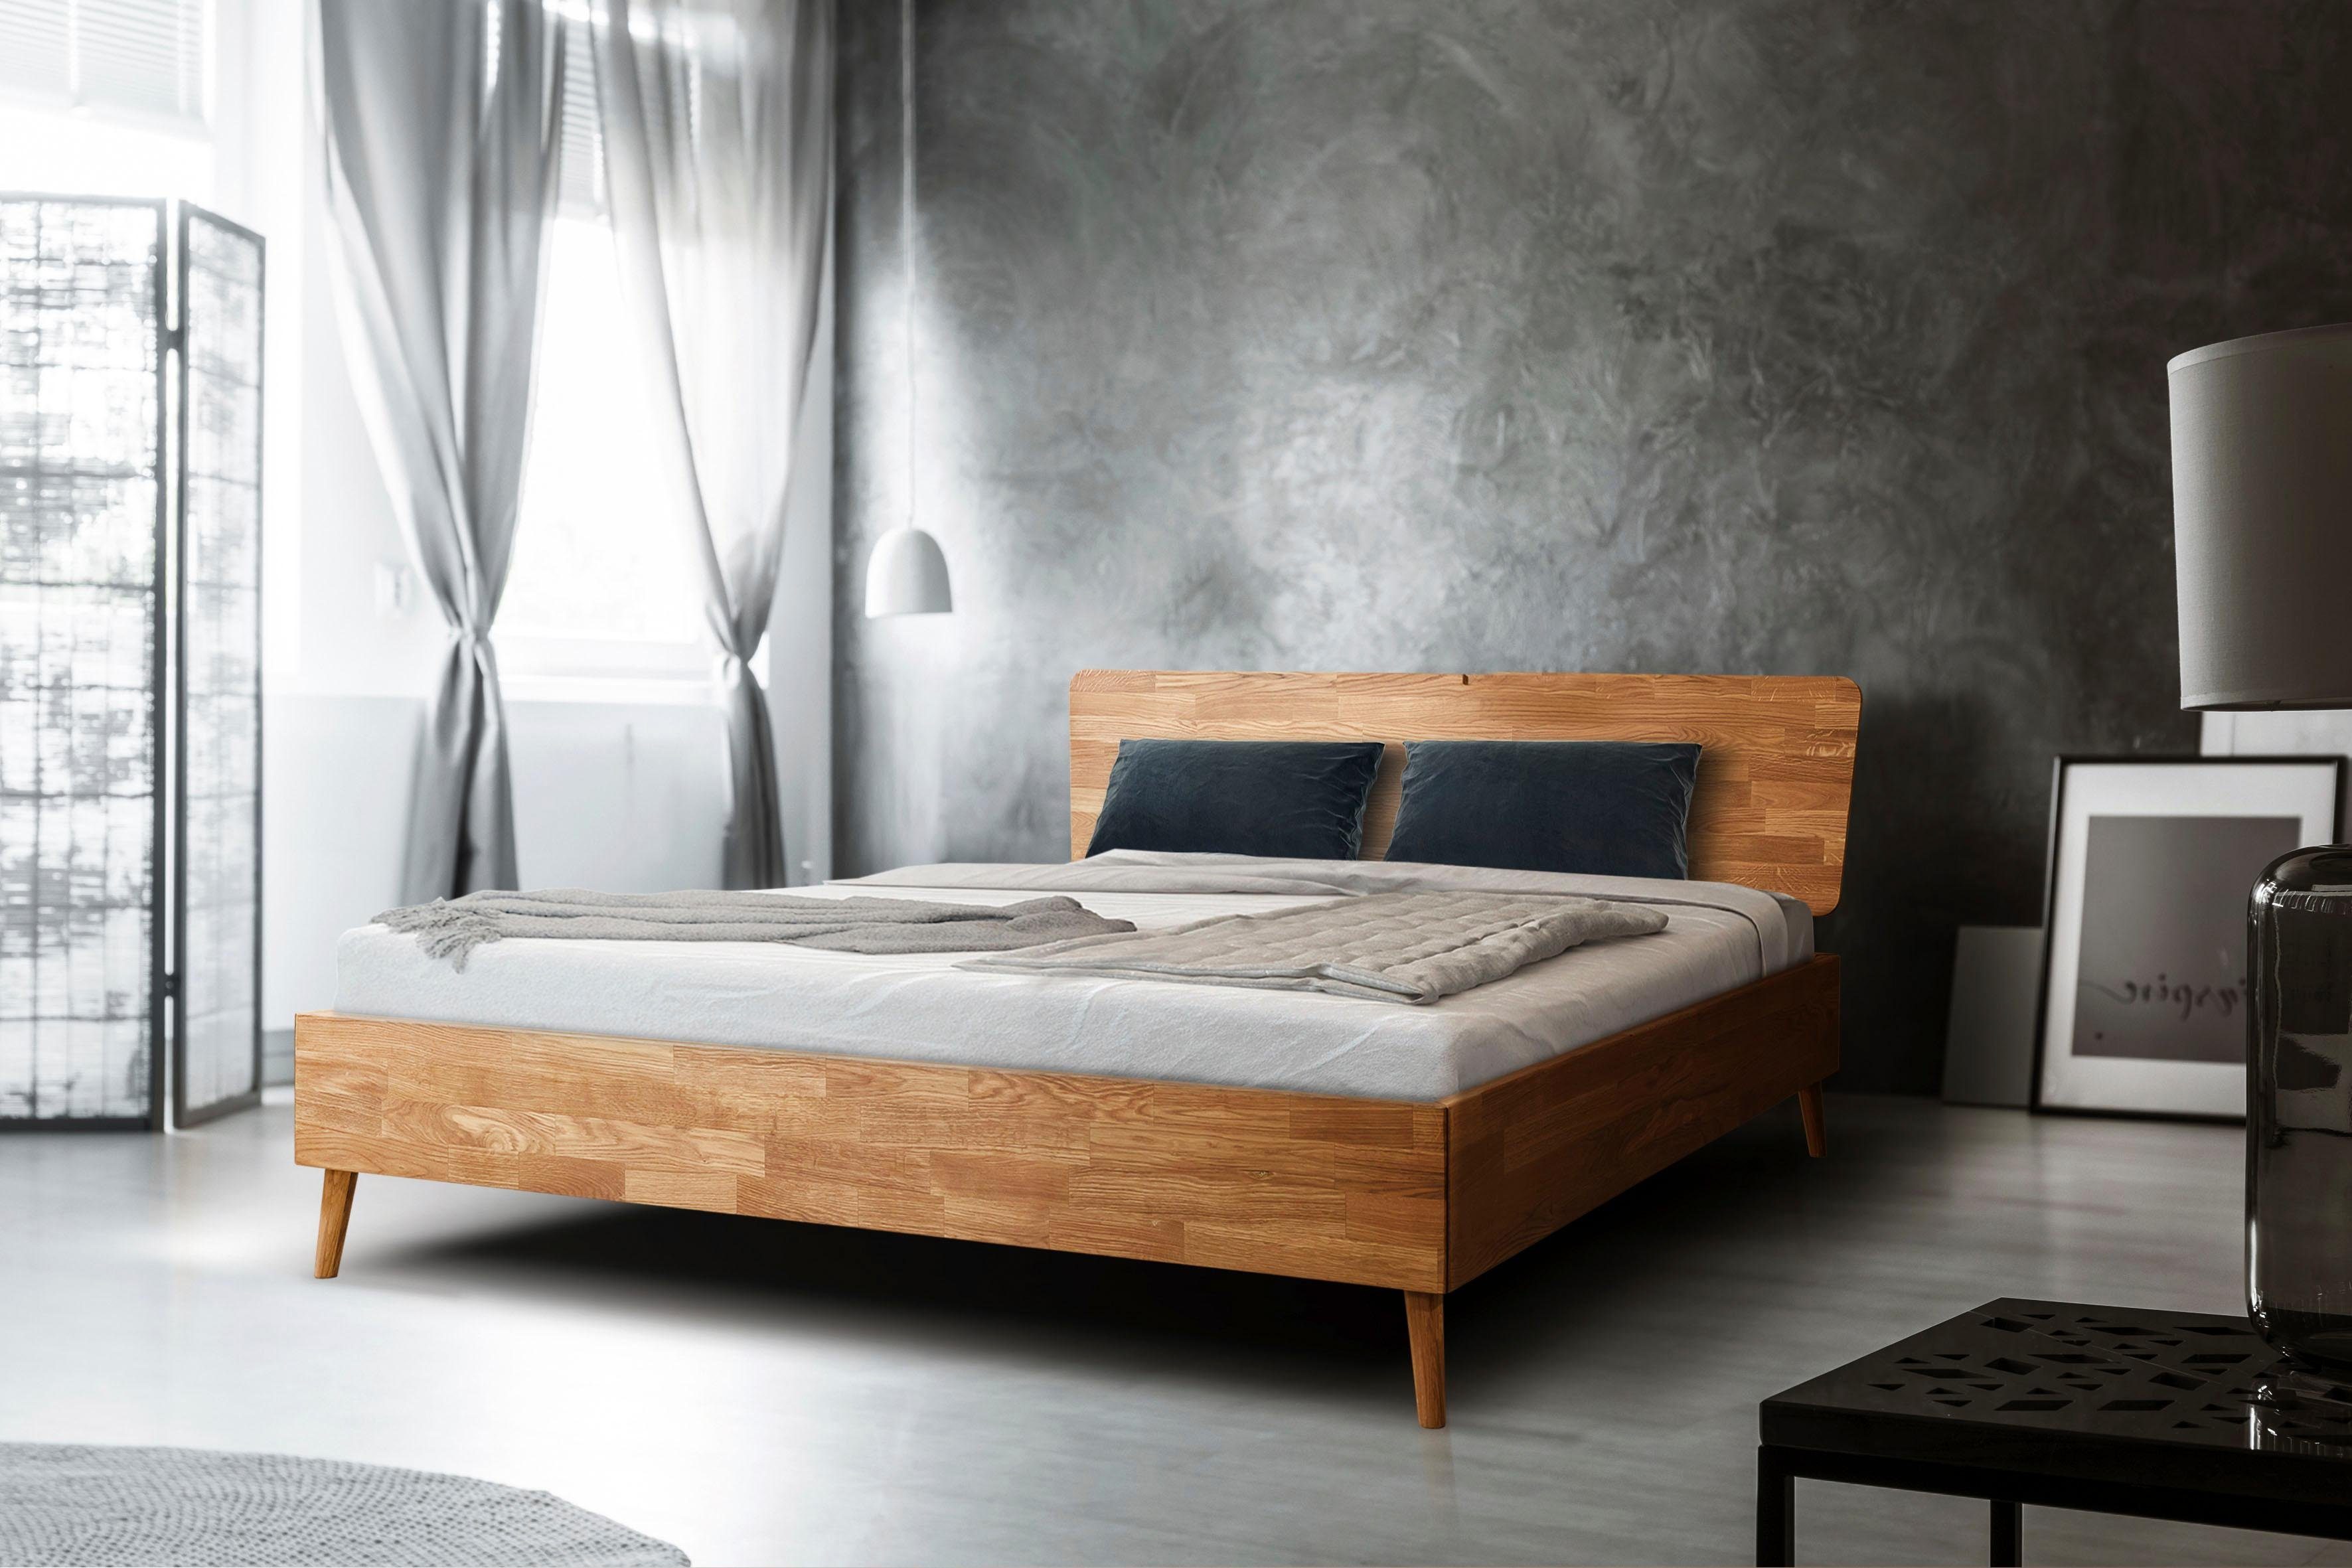 Home affaire Massivholzbett »Scandi«, aus massivem Eichenholz, mit  Holzfüßen, in zwei verschiedenen Größen erhältlich online kaufen | OTTO